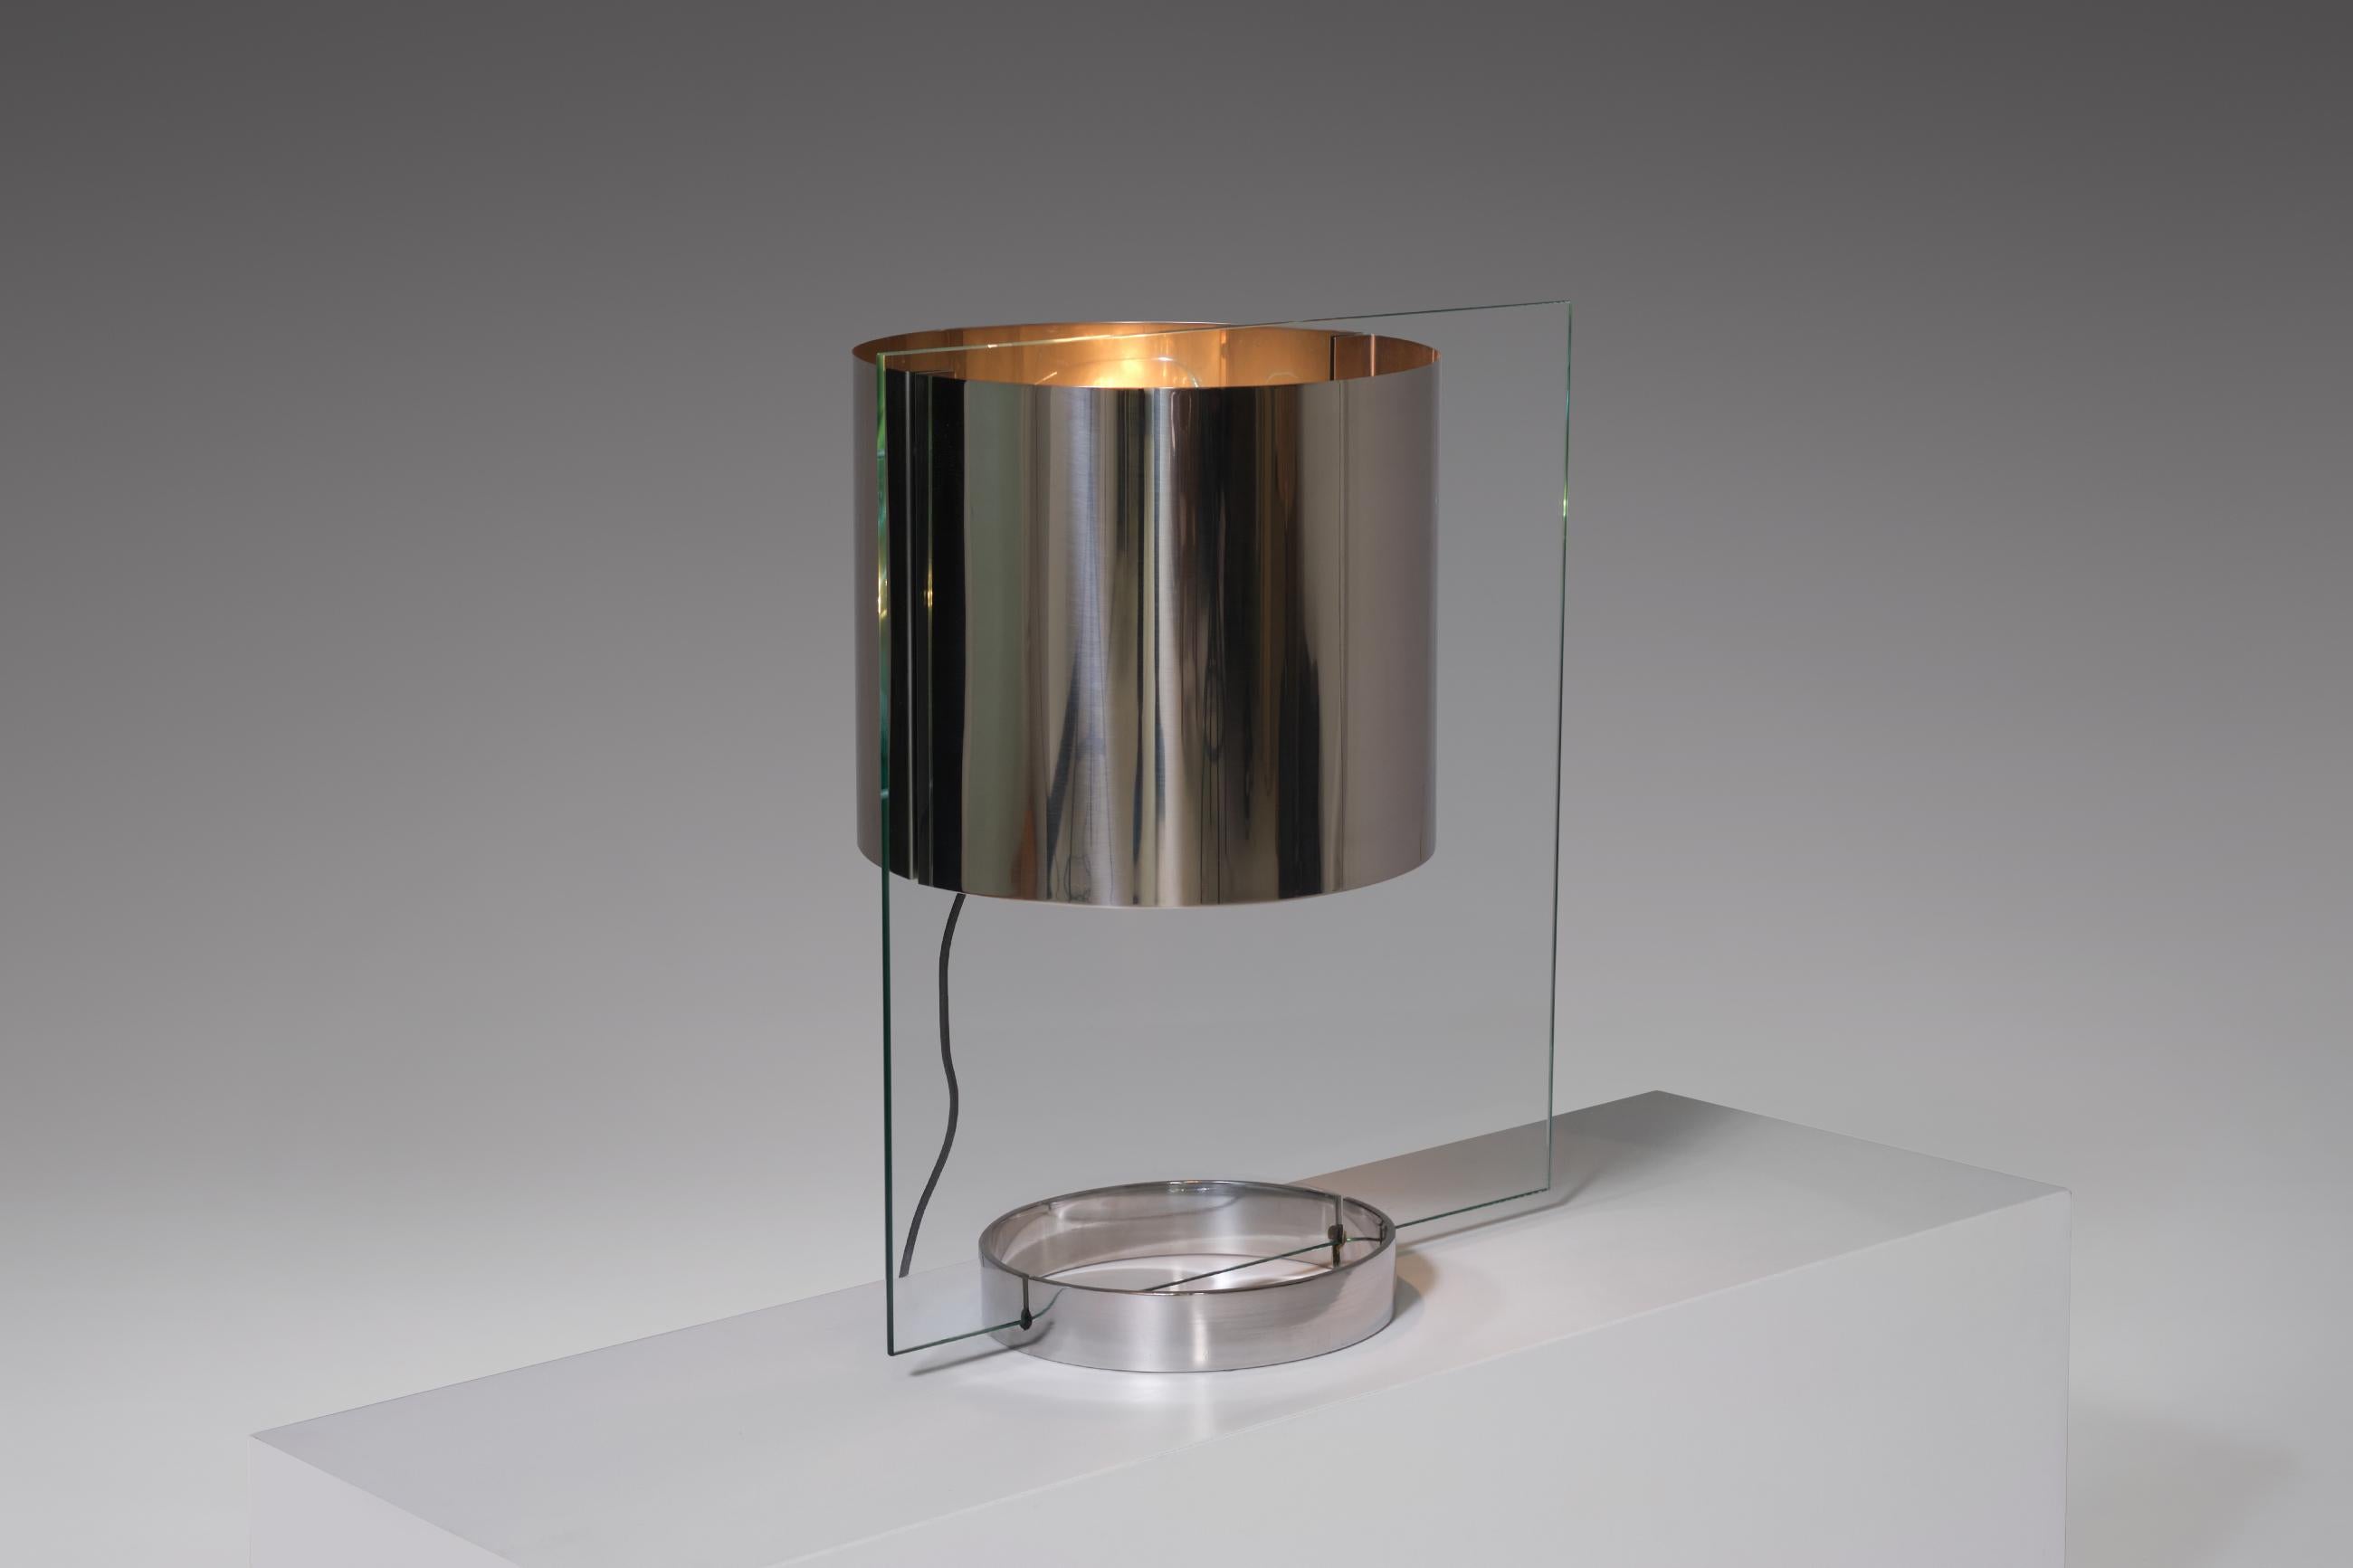 Rare lampe de table par Lumenform, Italie, 1970. Design extraordinaire réalisé à partir d'une feuille de verre rectangulaire et d'un abat-jour, d'une base et d'une pièce d'éclairage en acier inoxydable. Cette lampe sophistiquée aux lignes nettes